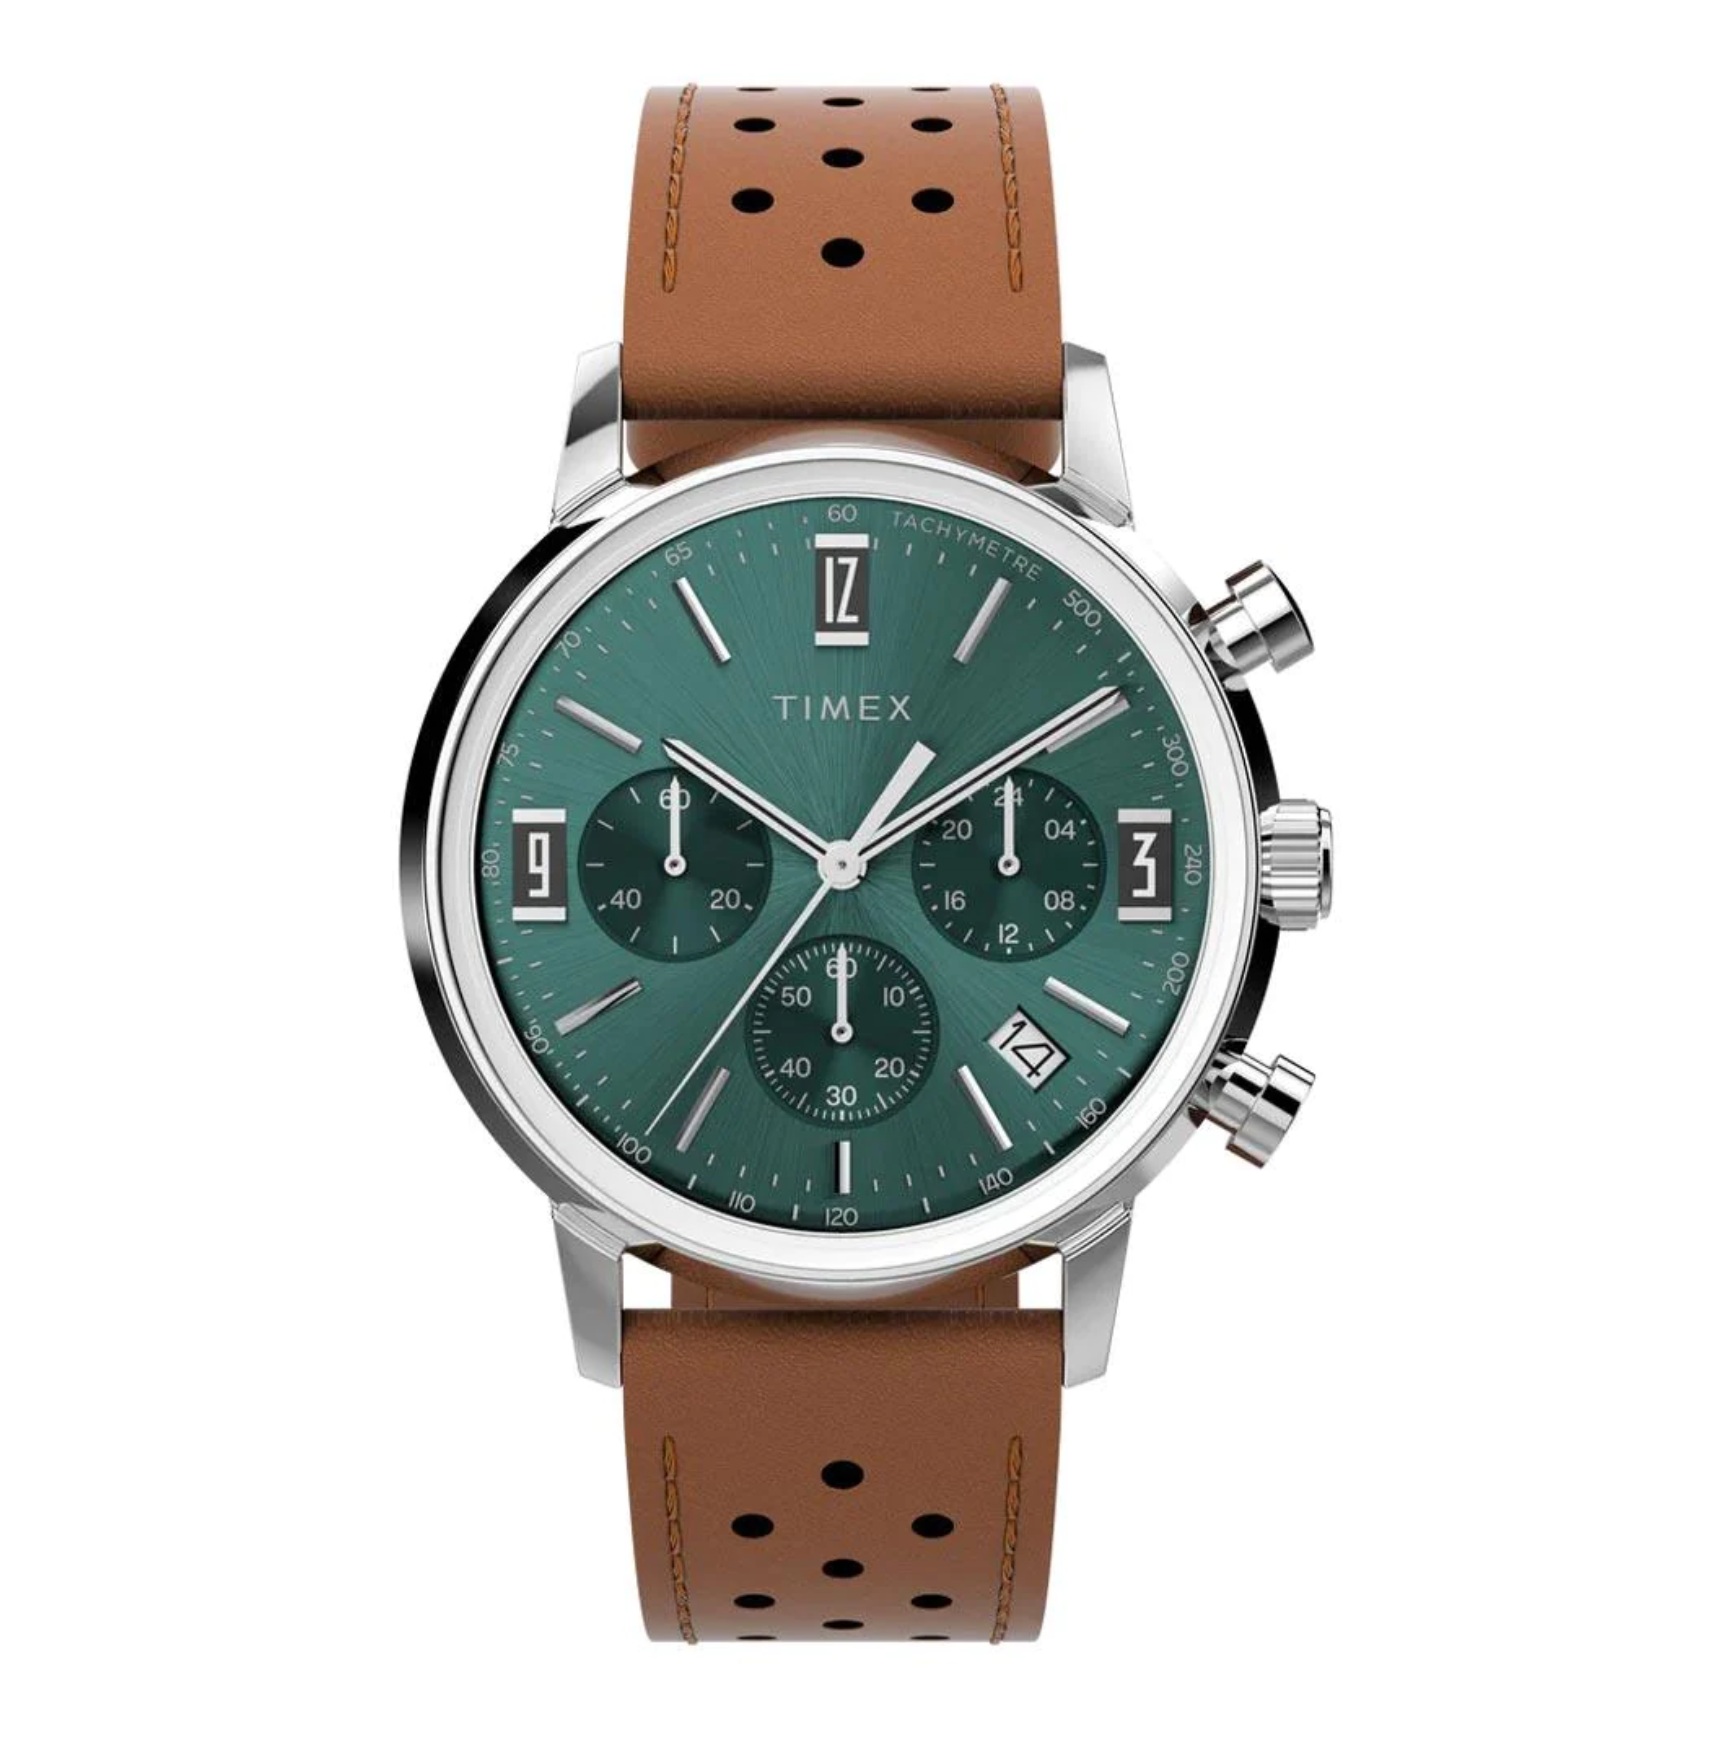 Timex - Marlin Quartz Chronograph Watch